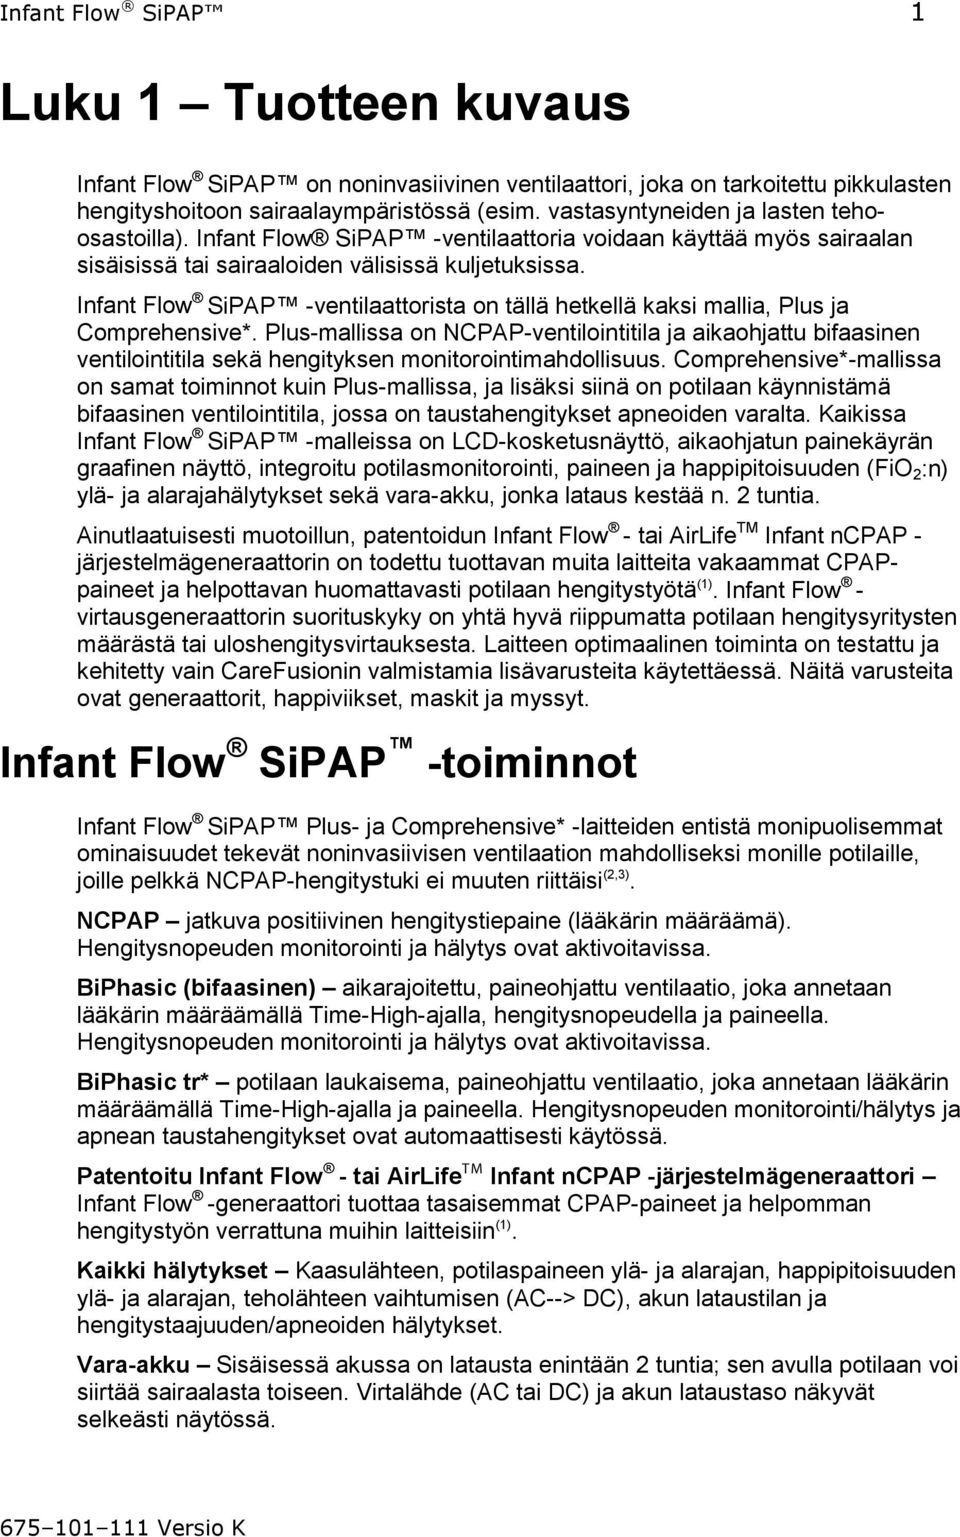 Infant Flow SiPAP -ventilaattorista on tällä hetkellä kaksi mallia, Plus ja Comprehensive*.